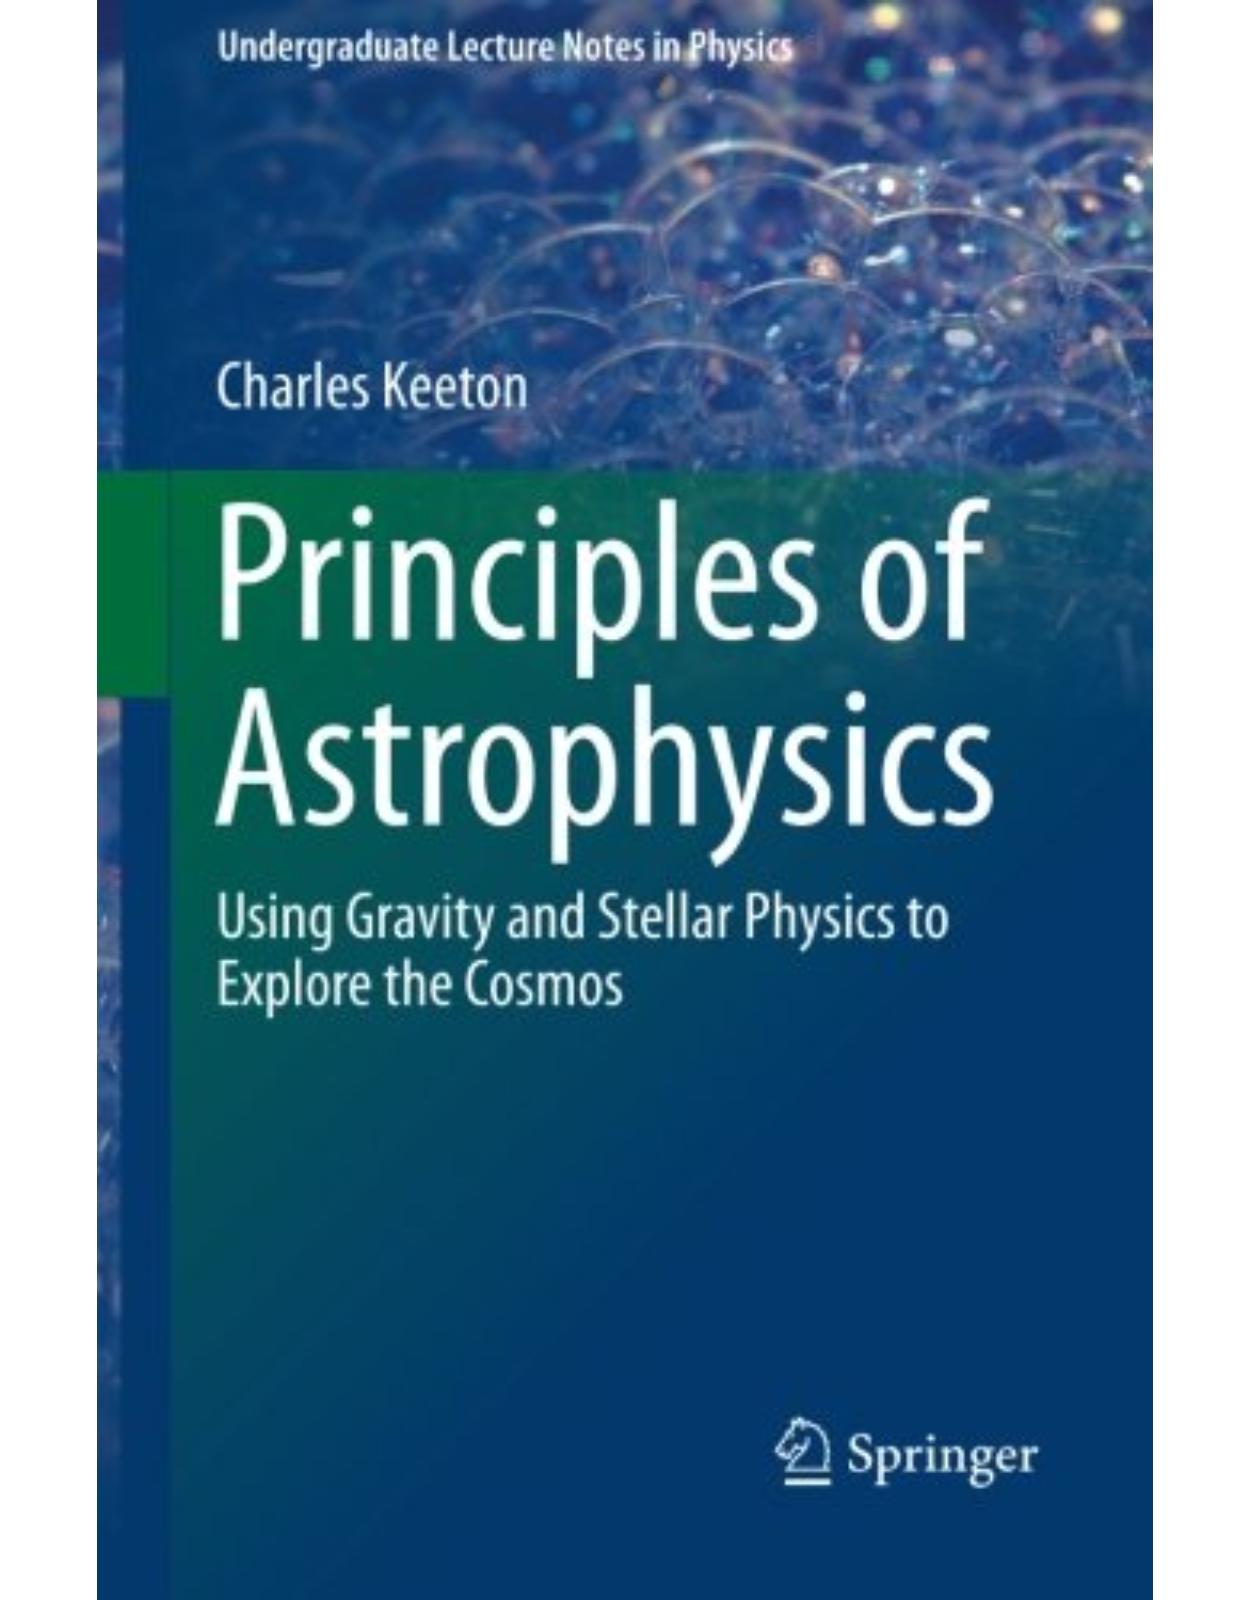 Principles of Astrophysics